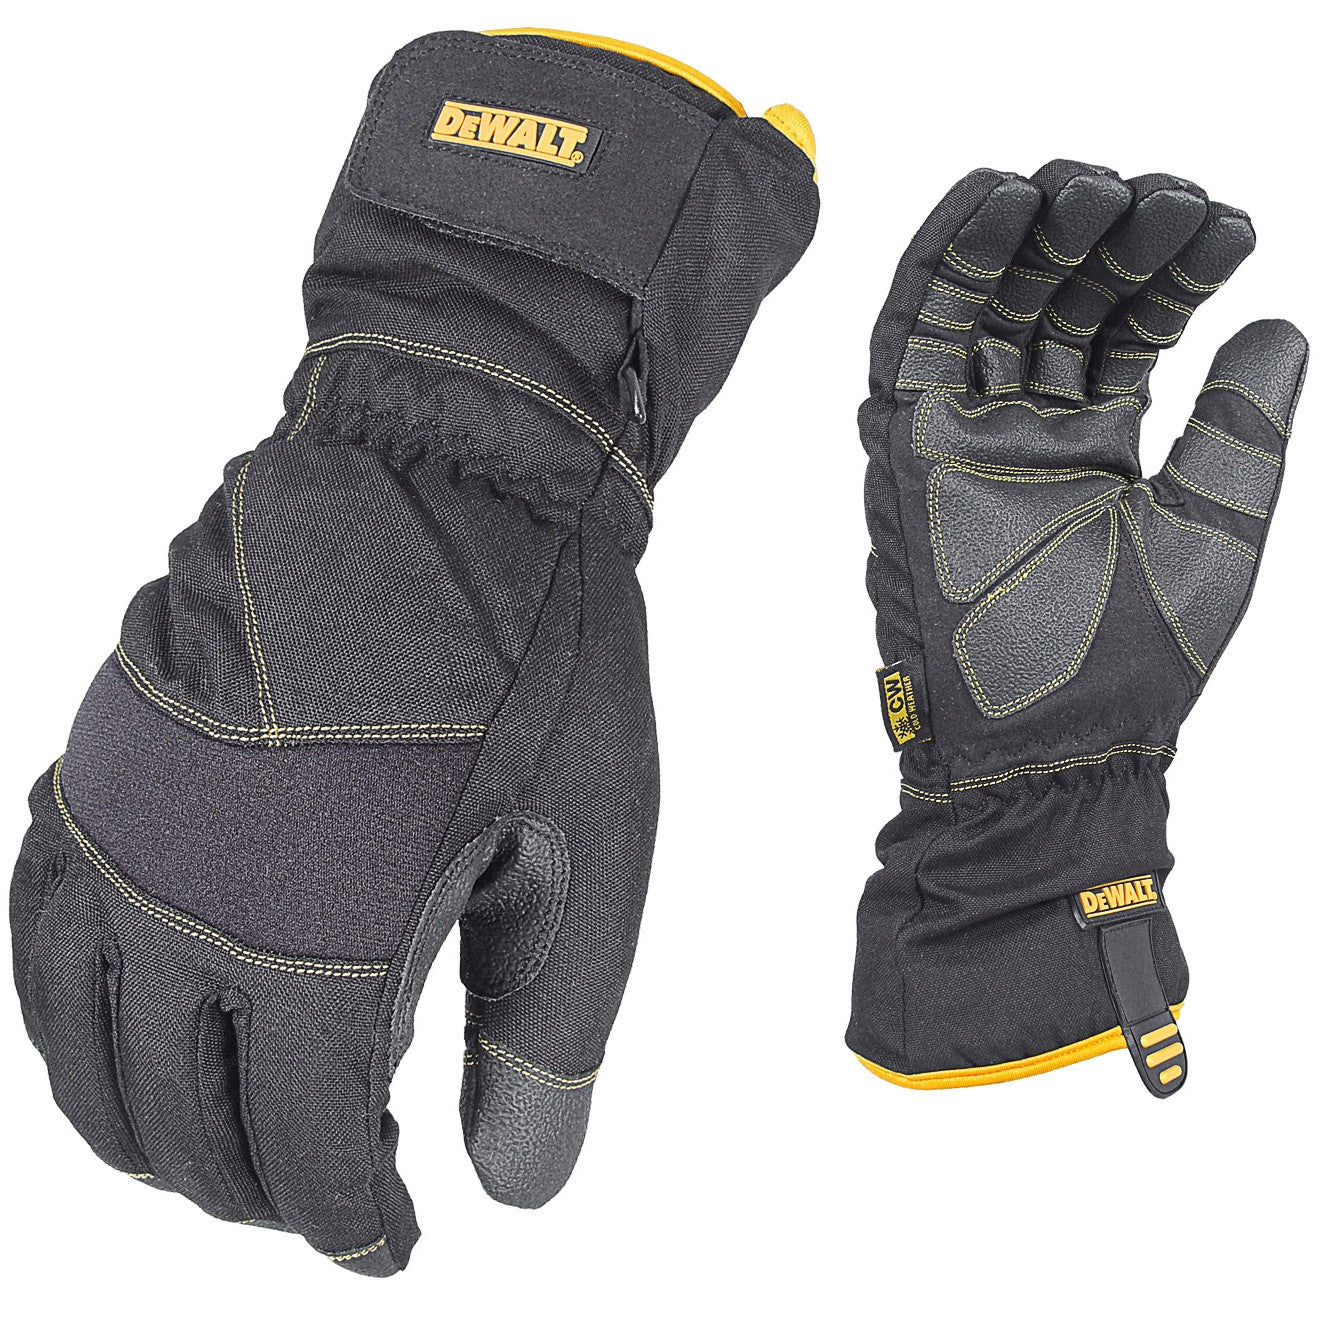 DEWALT DPG750 100g Insulated Extreme Condition Cold Weather Work Glove-eSafety Supplies, Inc